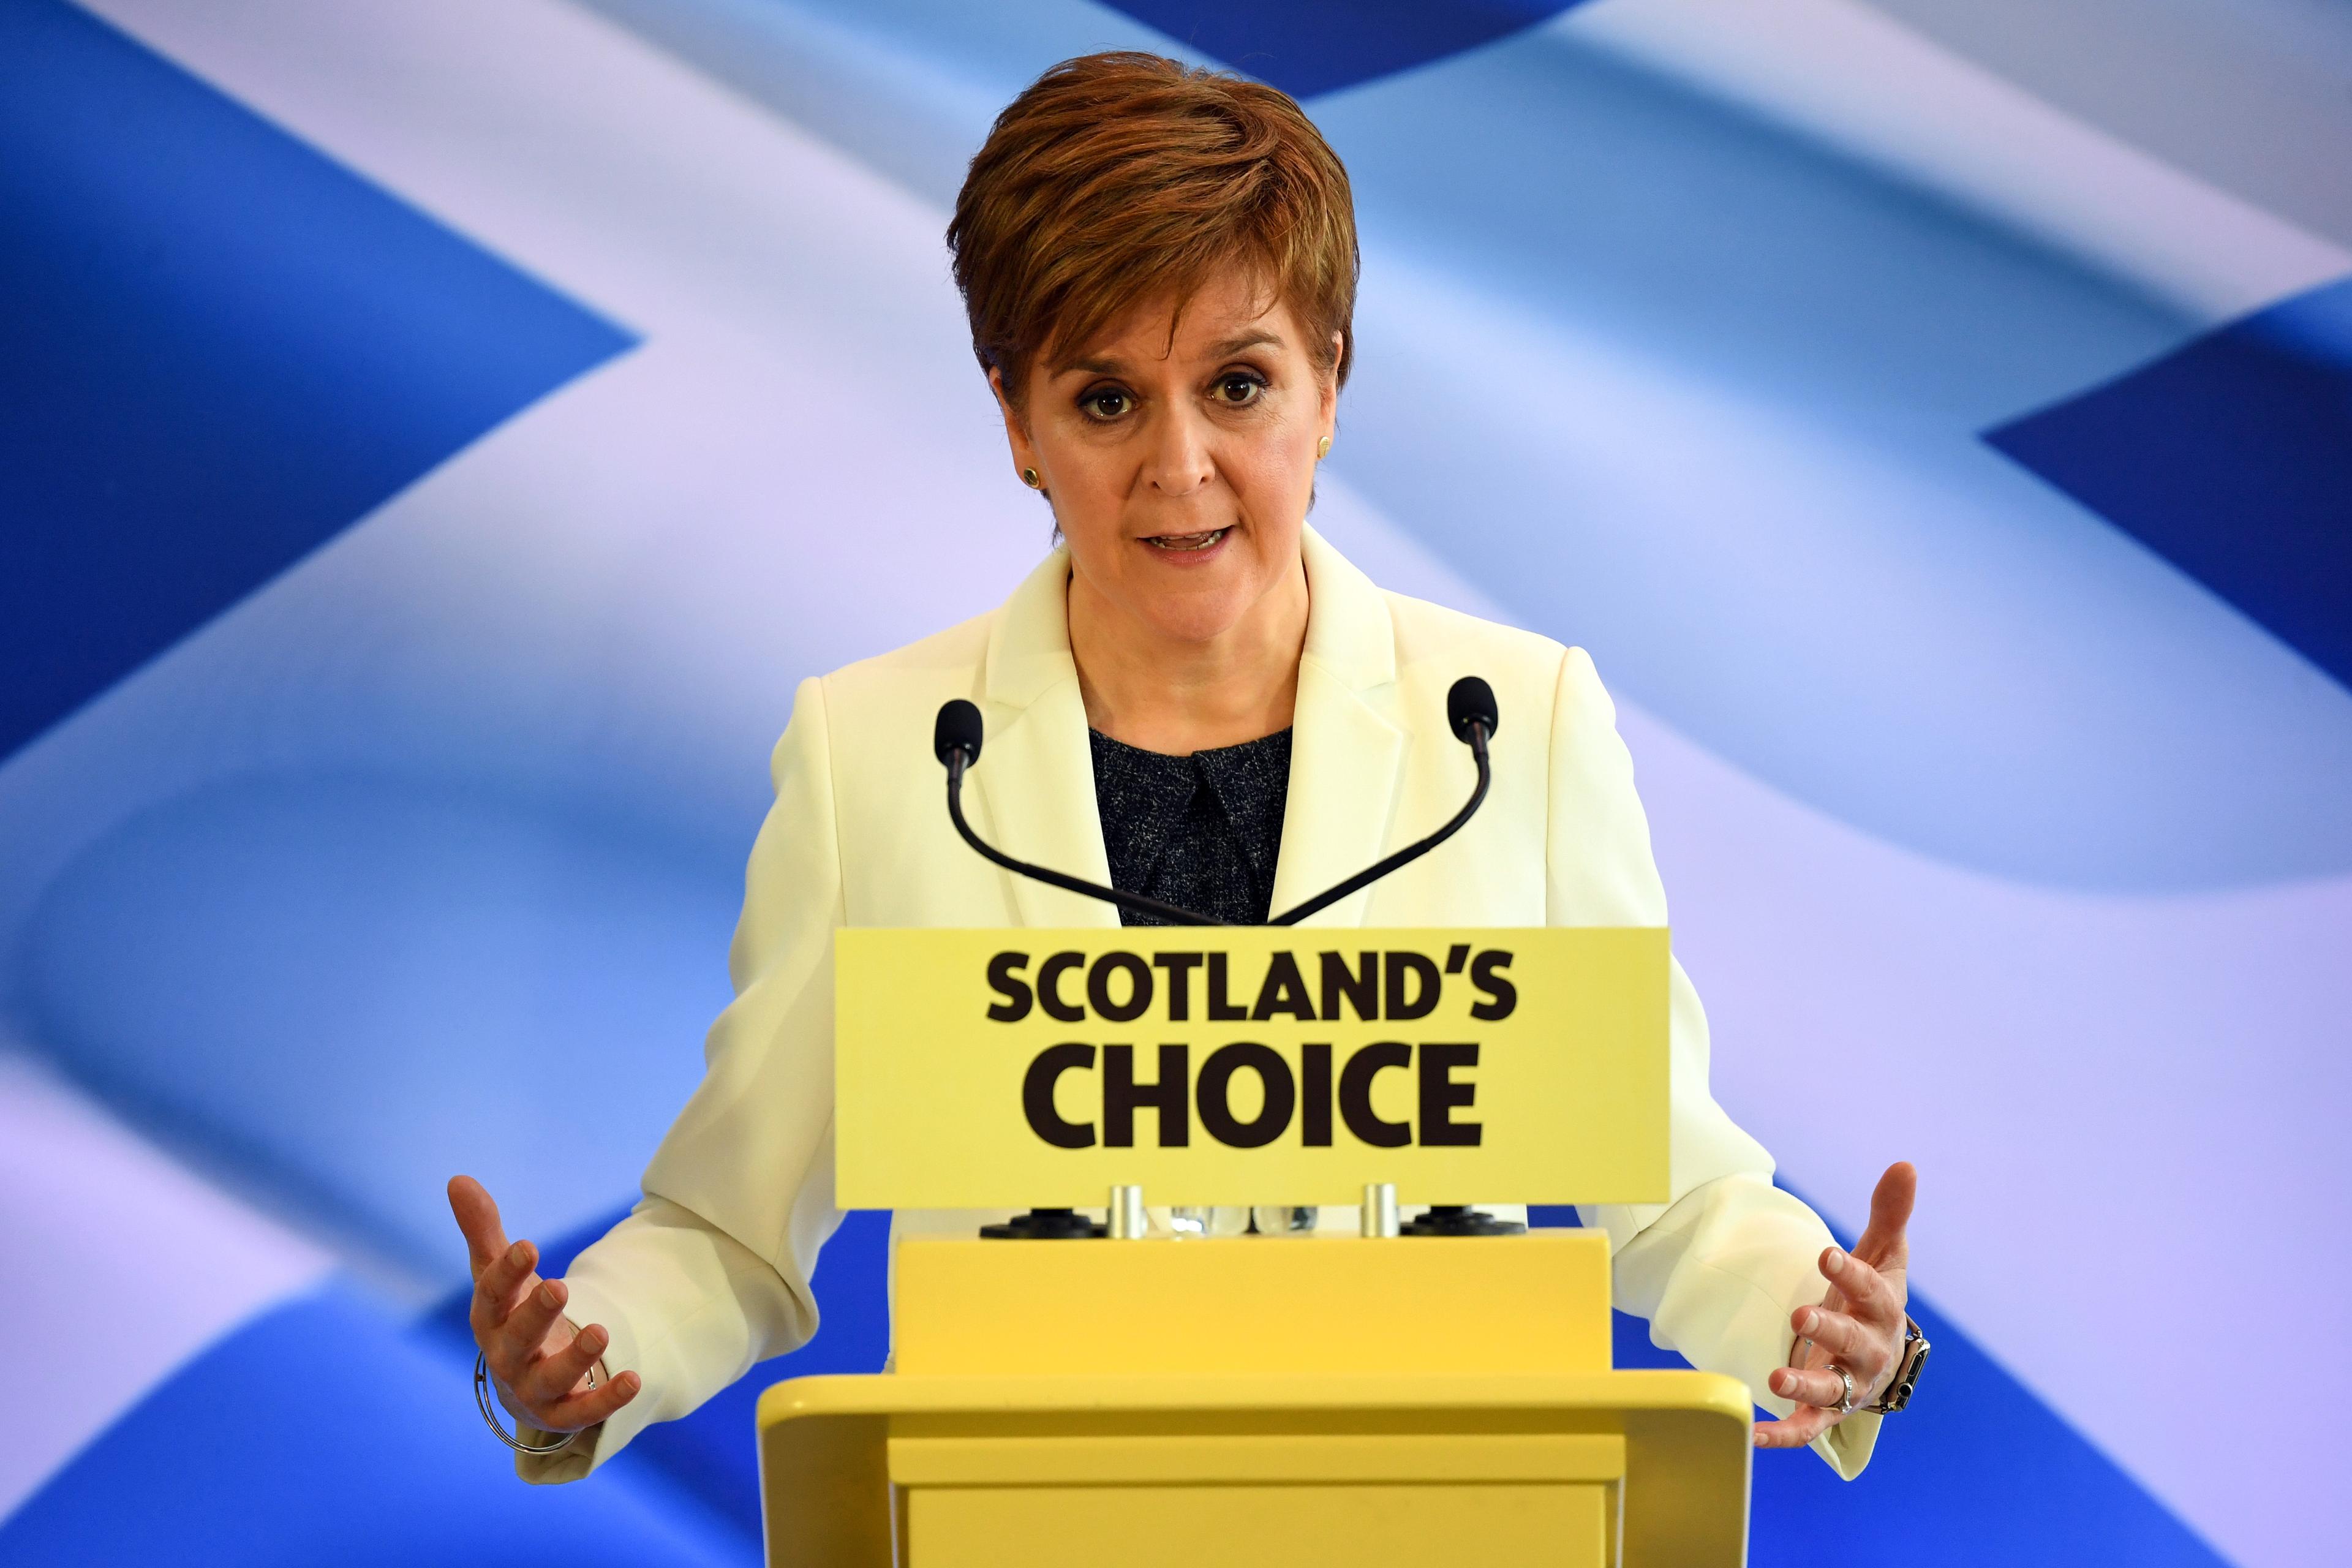 Premijerka najavila otcjepljenje: Moj posao je da povedem Škotsku u nezavisnost